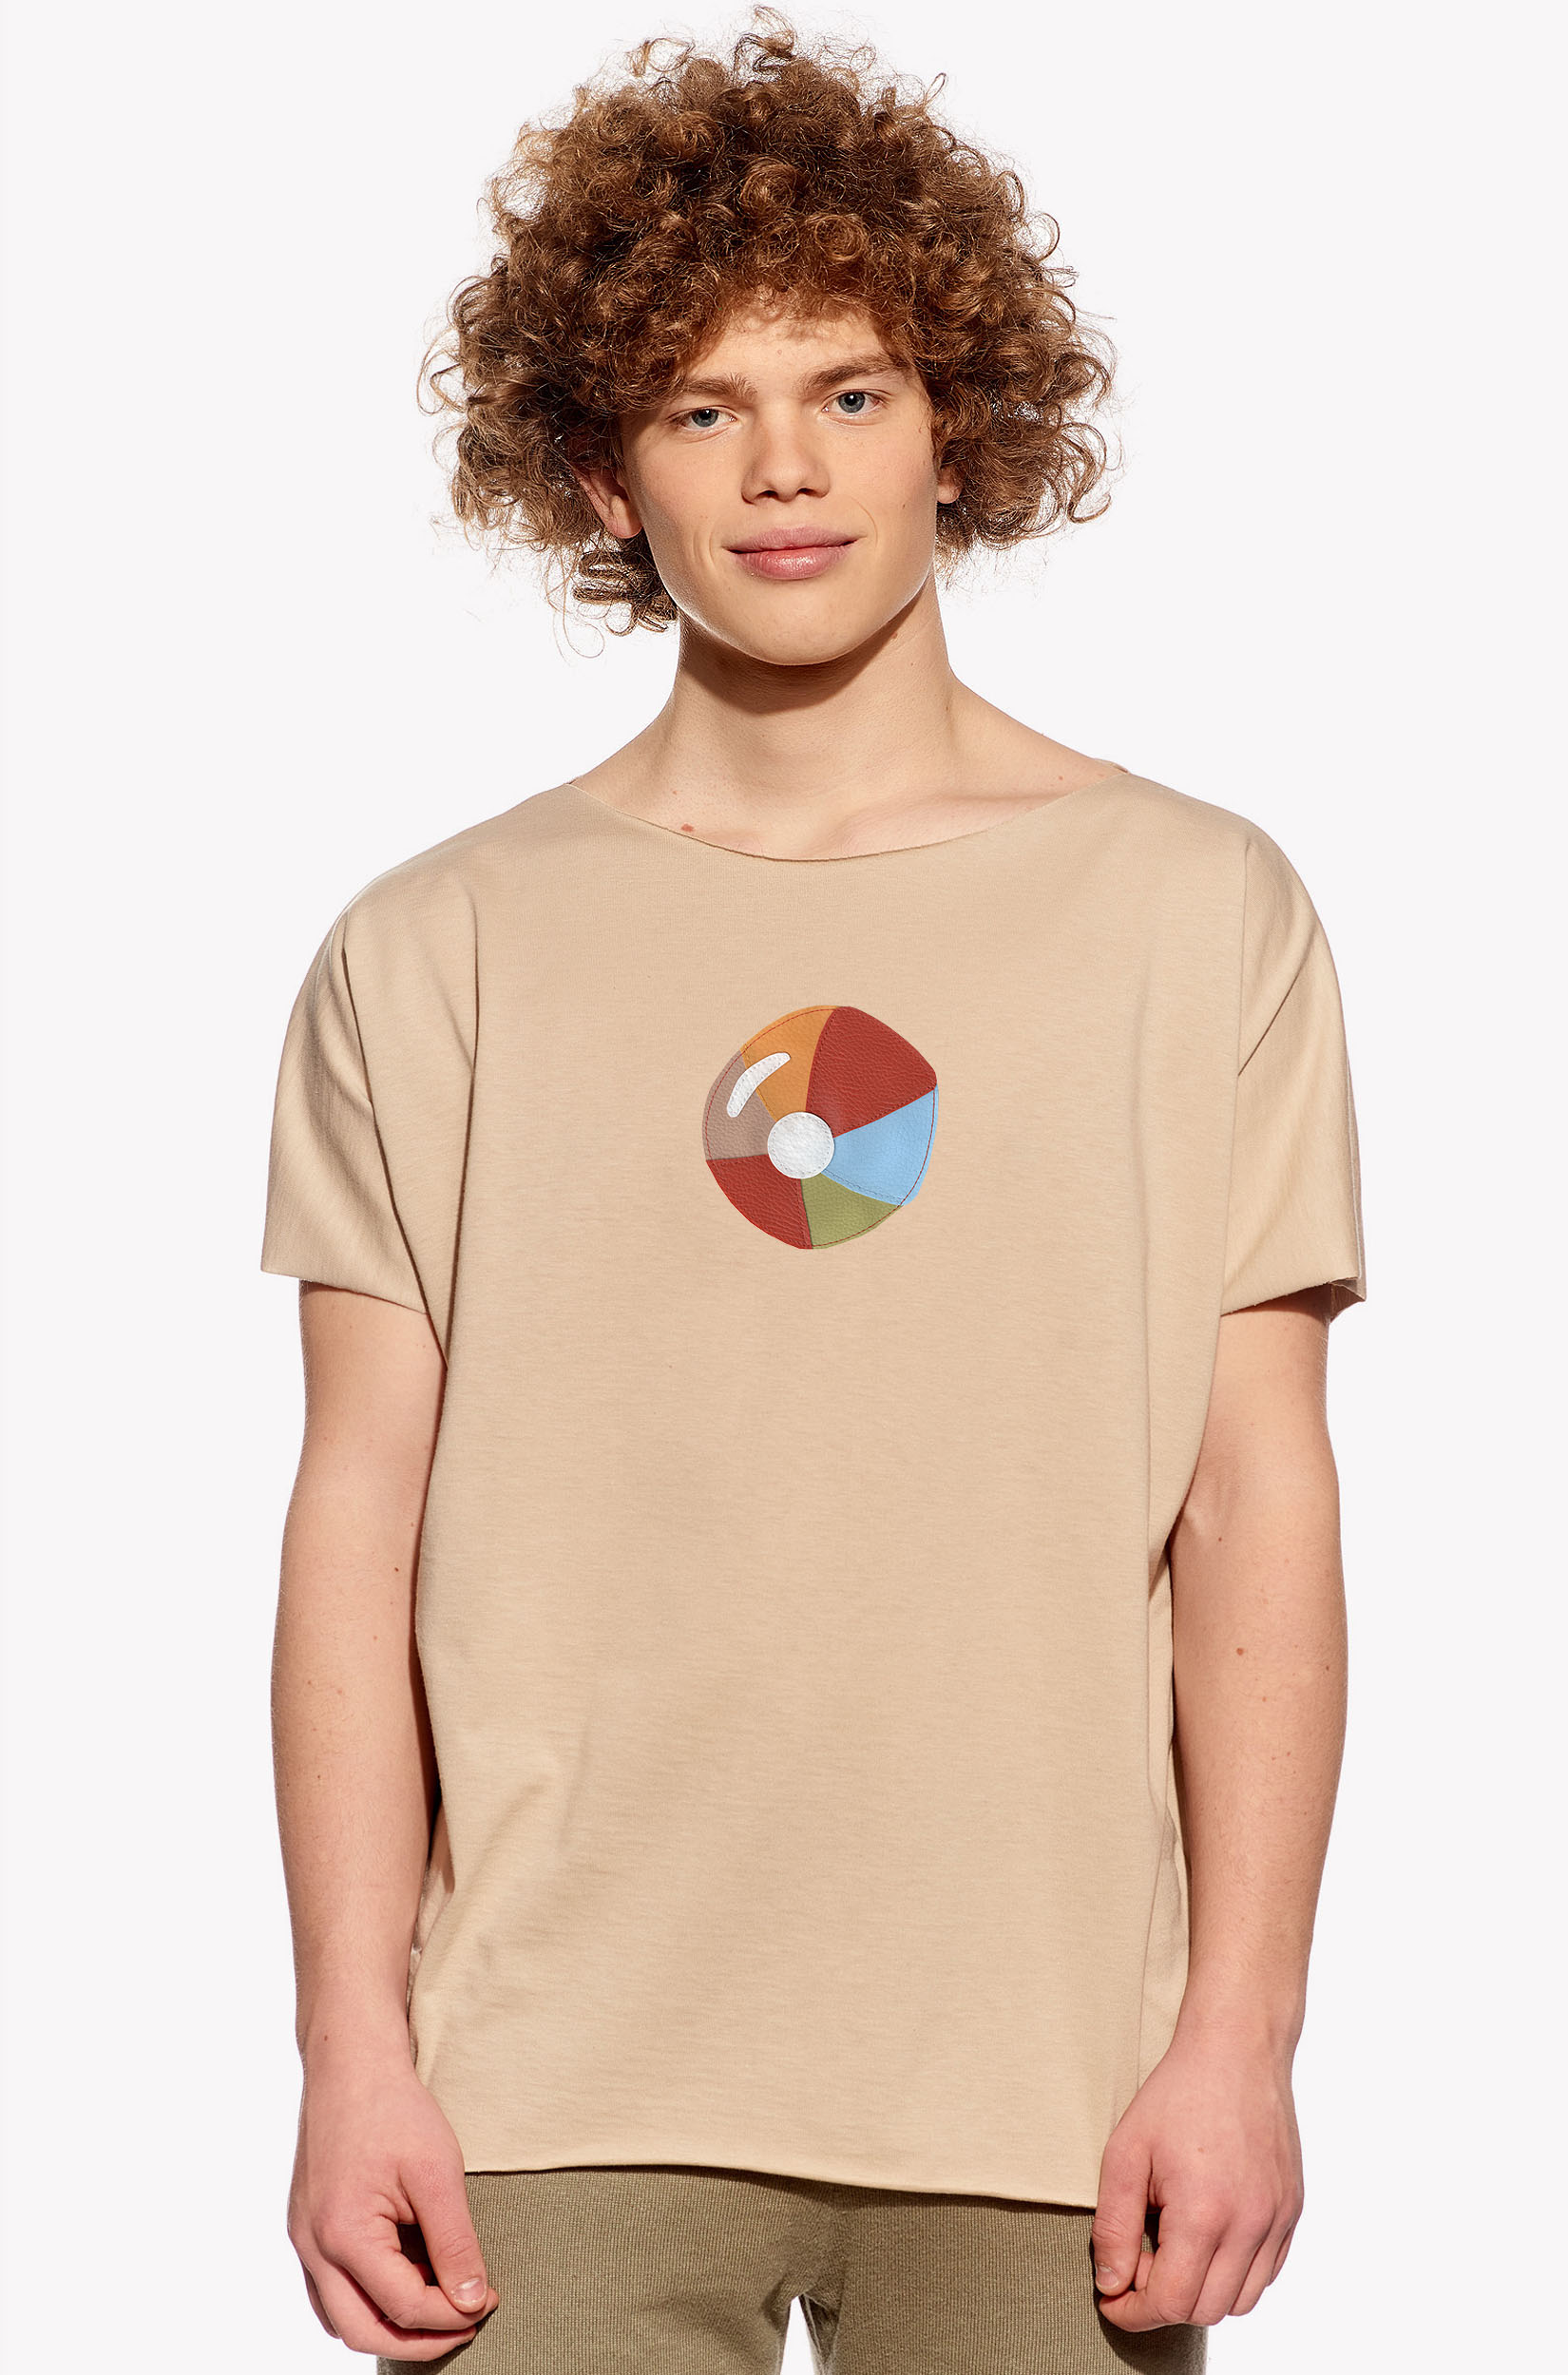 Shirt with ball